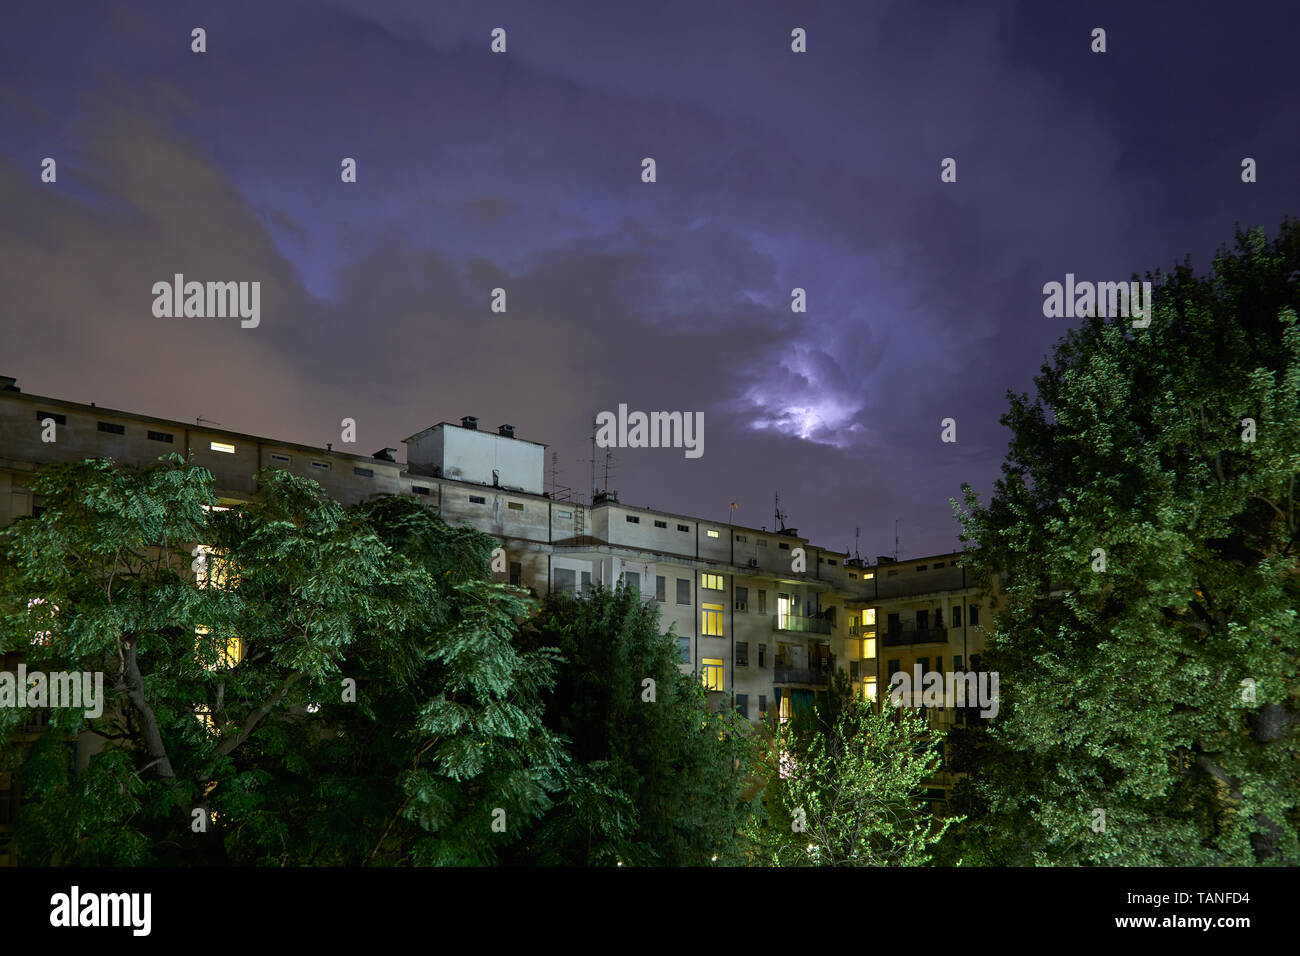 Gebäude und grüne Bäume bei Nacht, beleuchtete Himmel während eines Gewitters Stockfoto